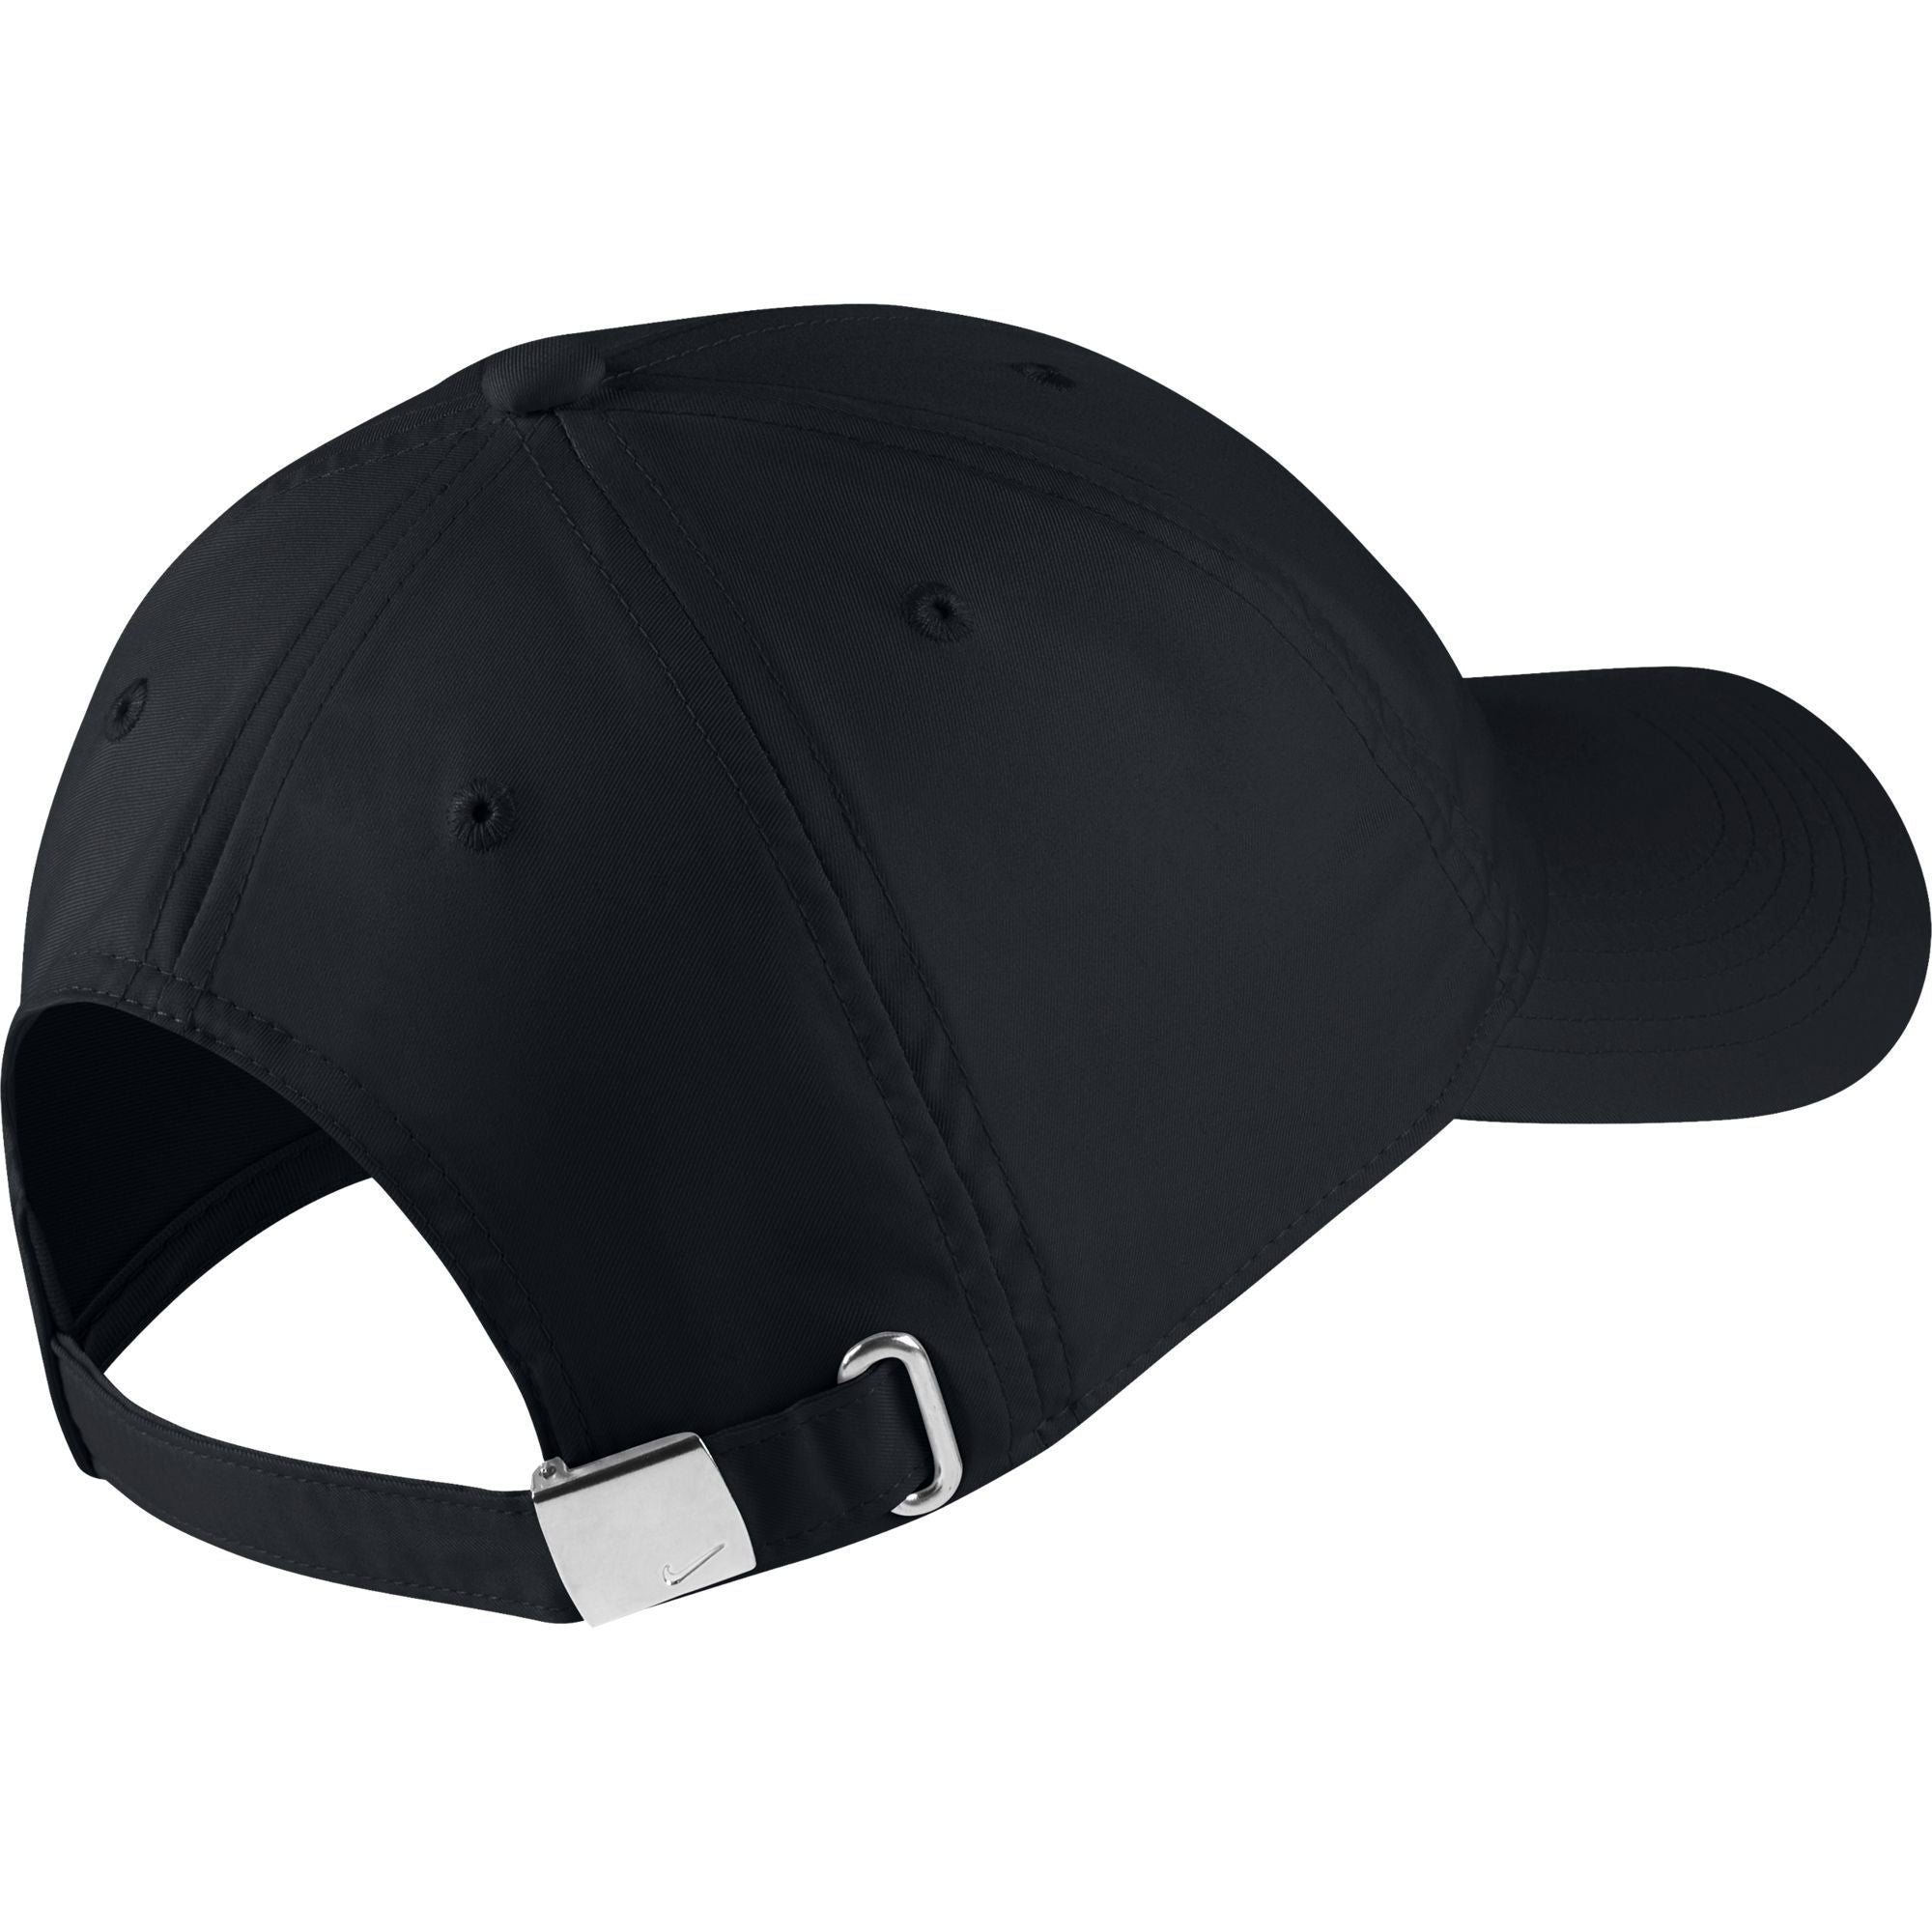 قبعة هيريتيدج ٨٦ سووش المعدنية القابلة للتعديل للأطفال